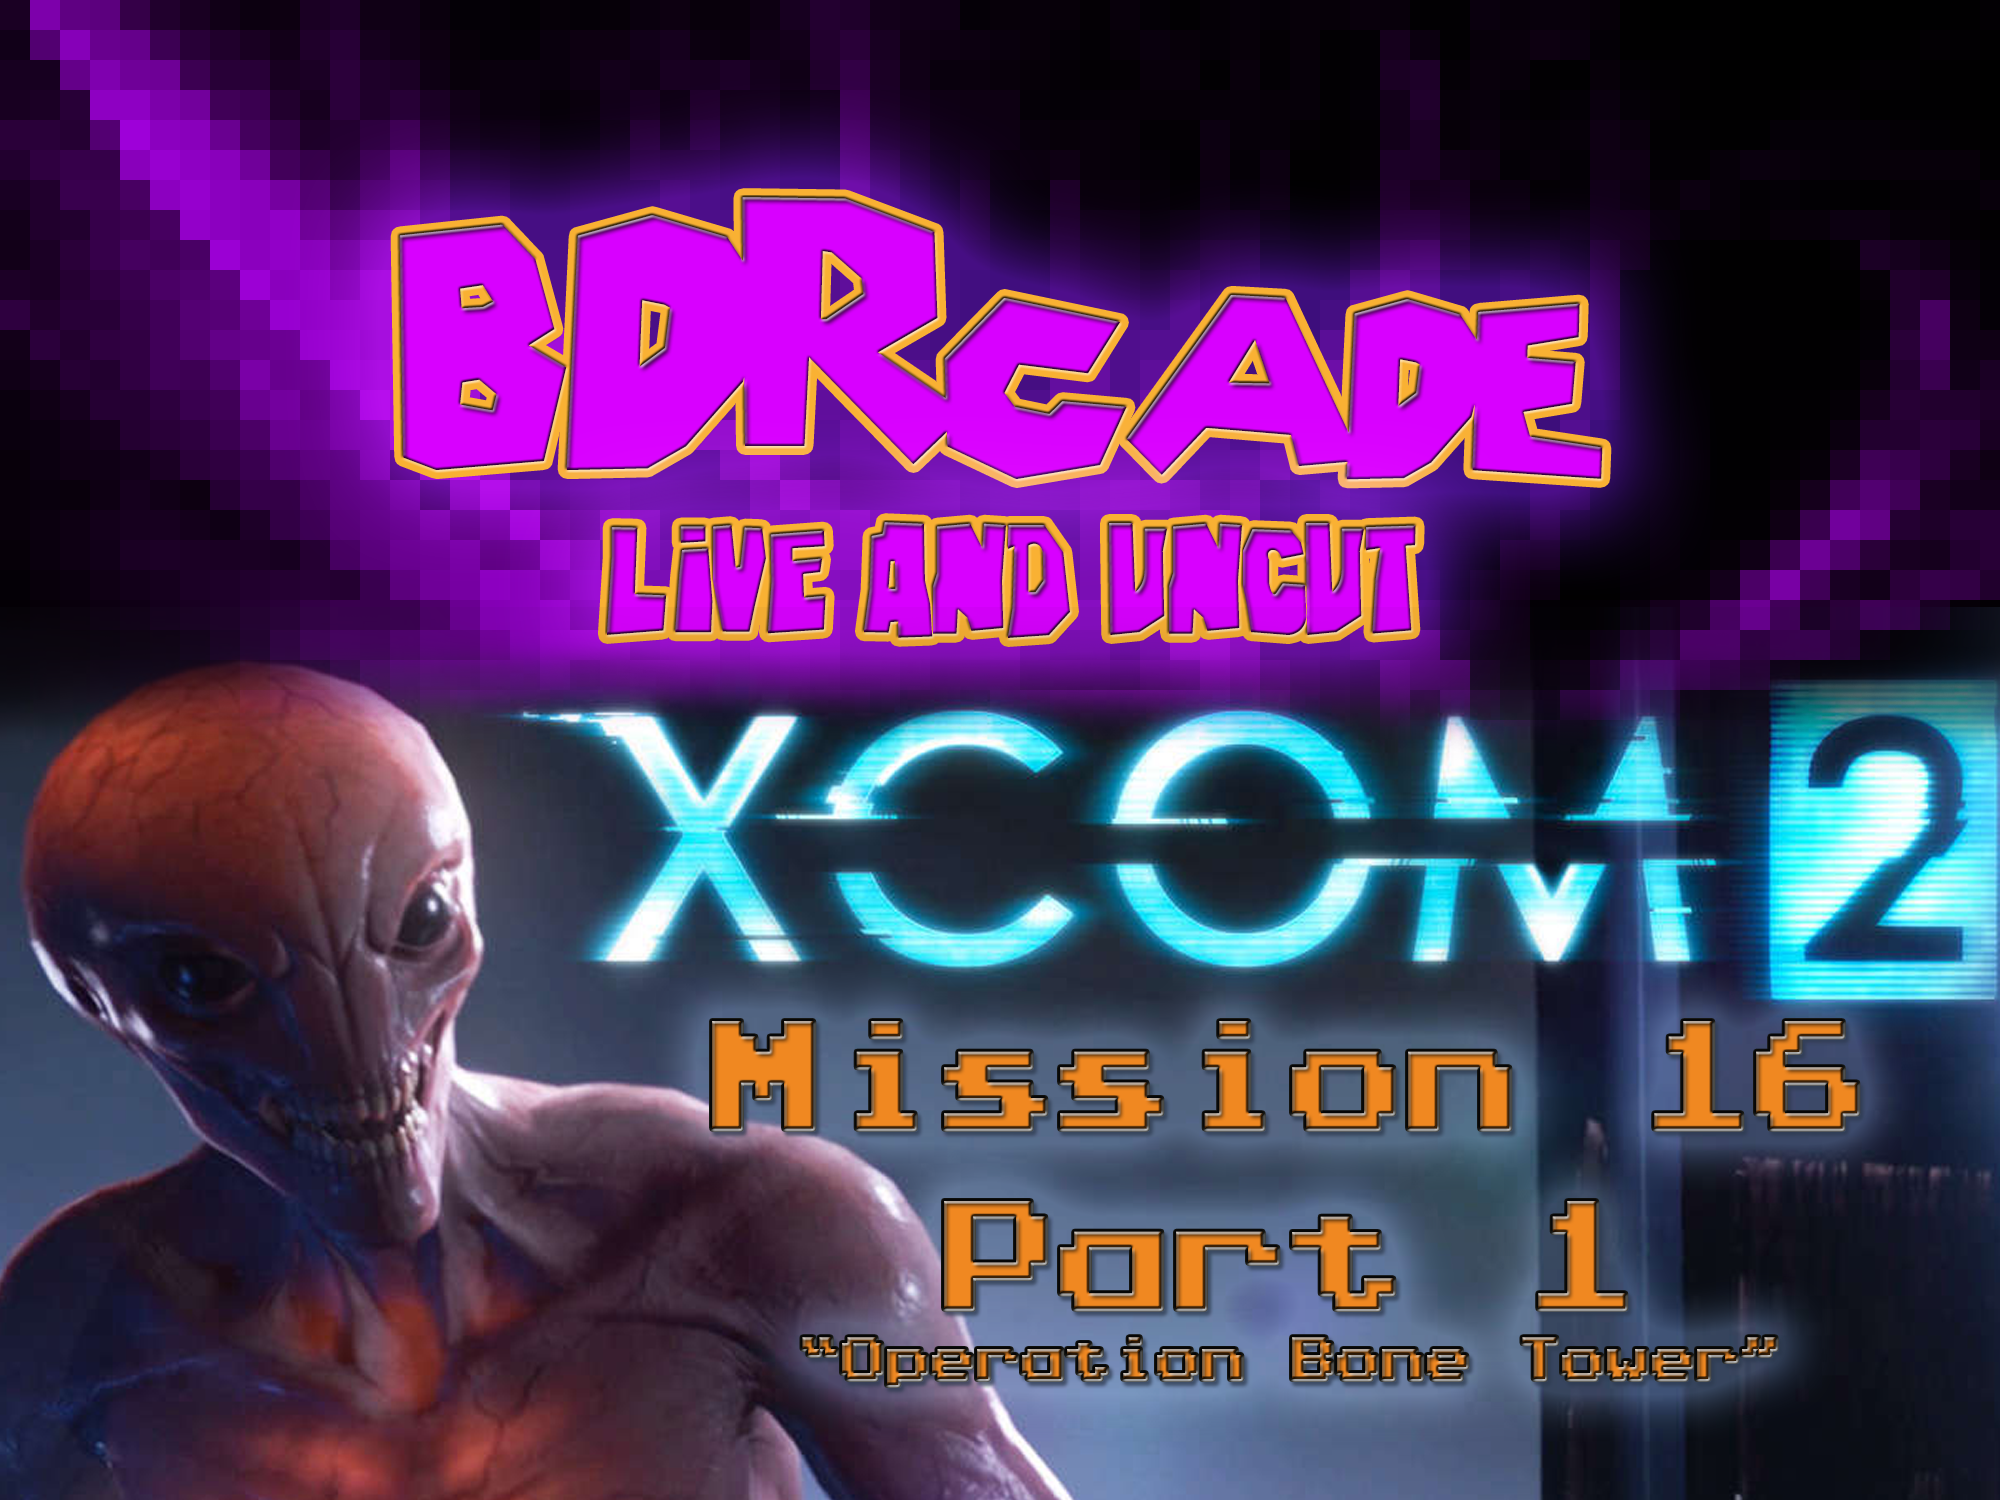 XCOM 2 – Mission 16 Part 1: “Operation Bone Tower” – A BDRcade Live Stream